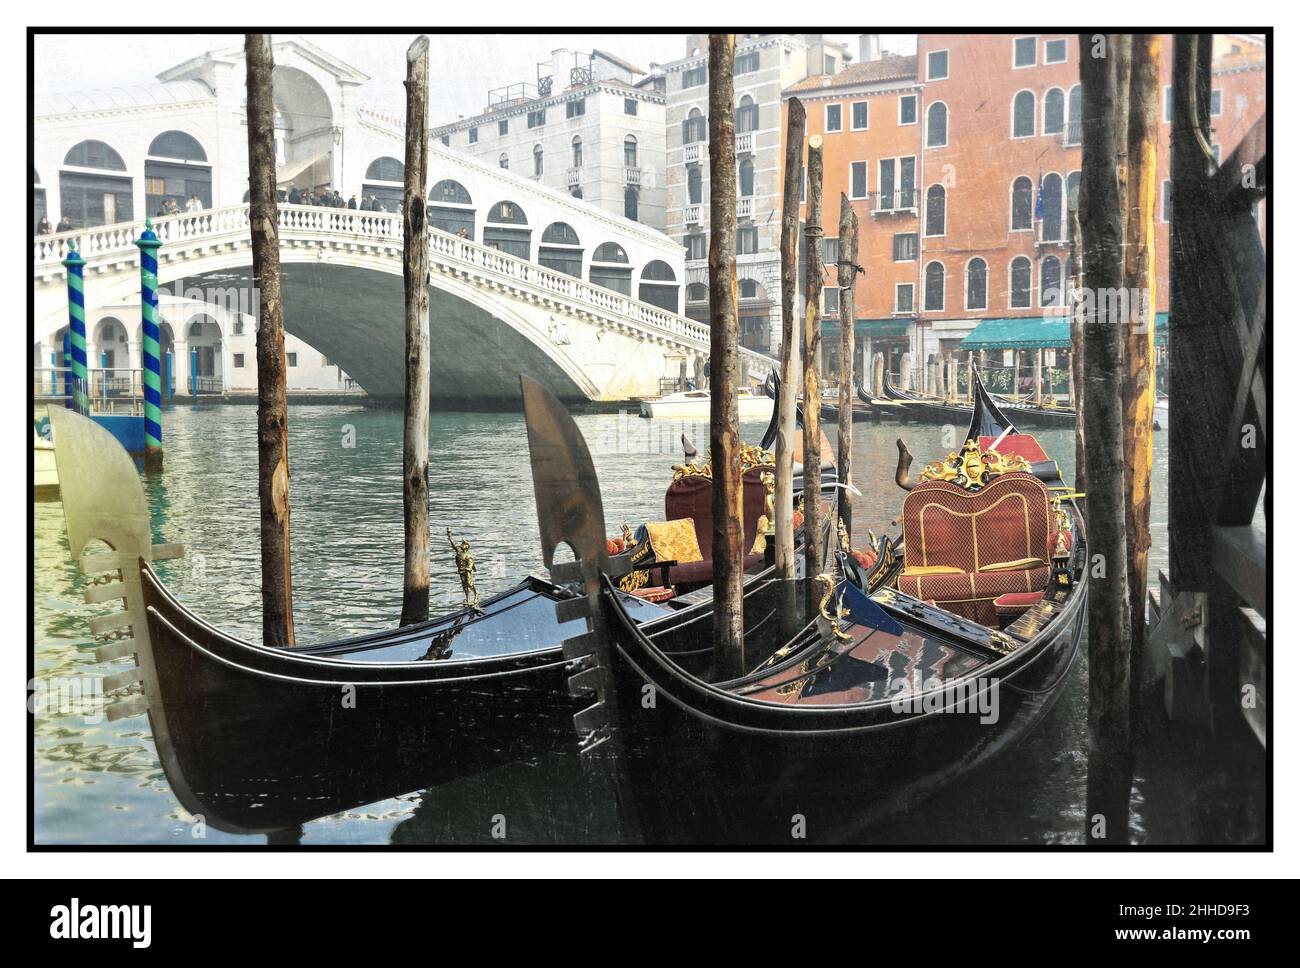 Romantique canaux vénitiens.Vieille Venise.Gondoles et pont du Rialto.Image rétro.Italie Banque D'Images